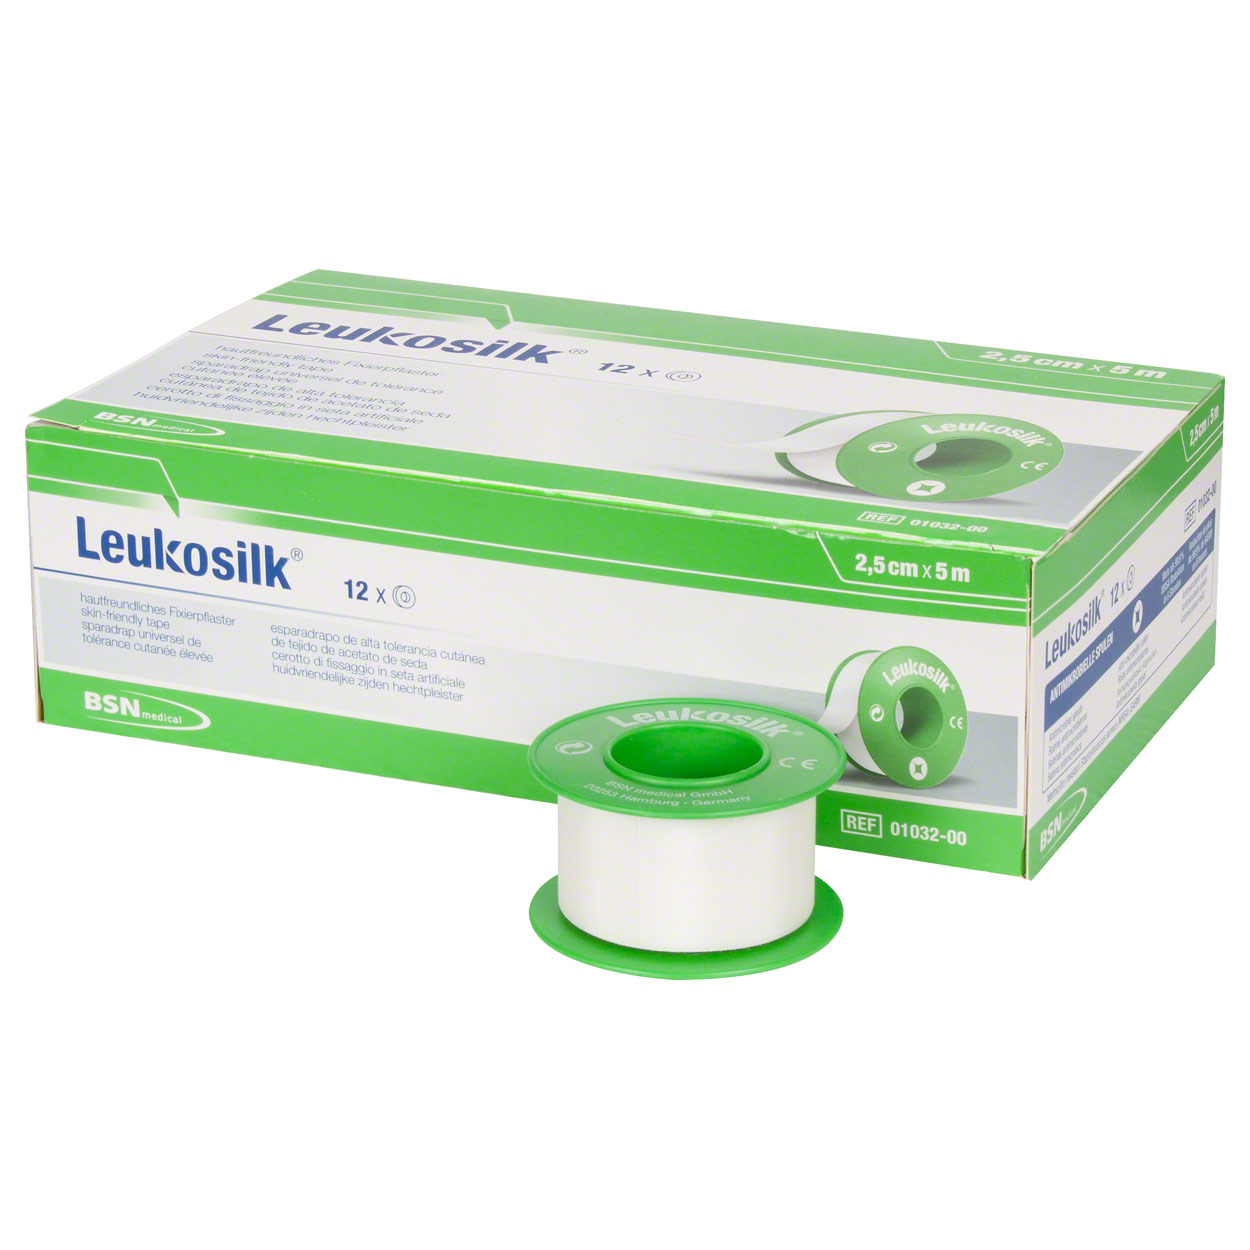 BSN medical Leukosilk® Rollenpflaster, Größe: 2,5 cm x 5 m